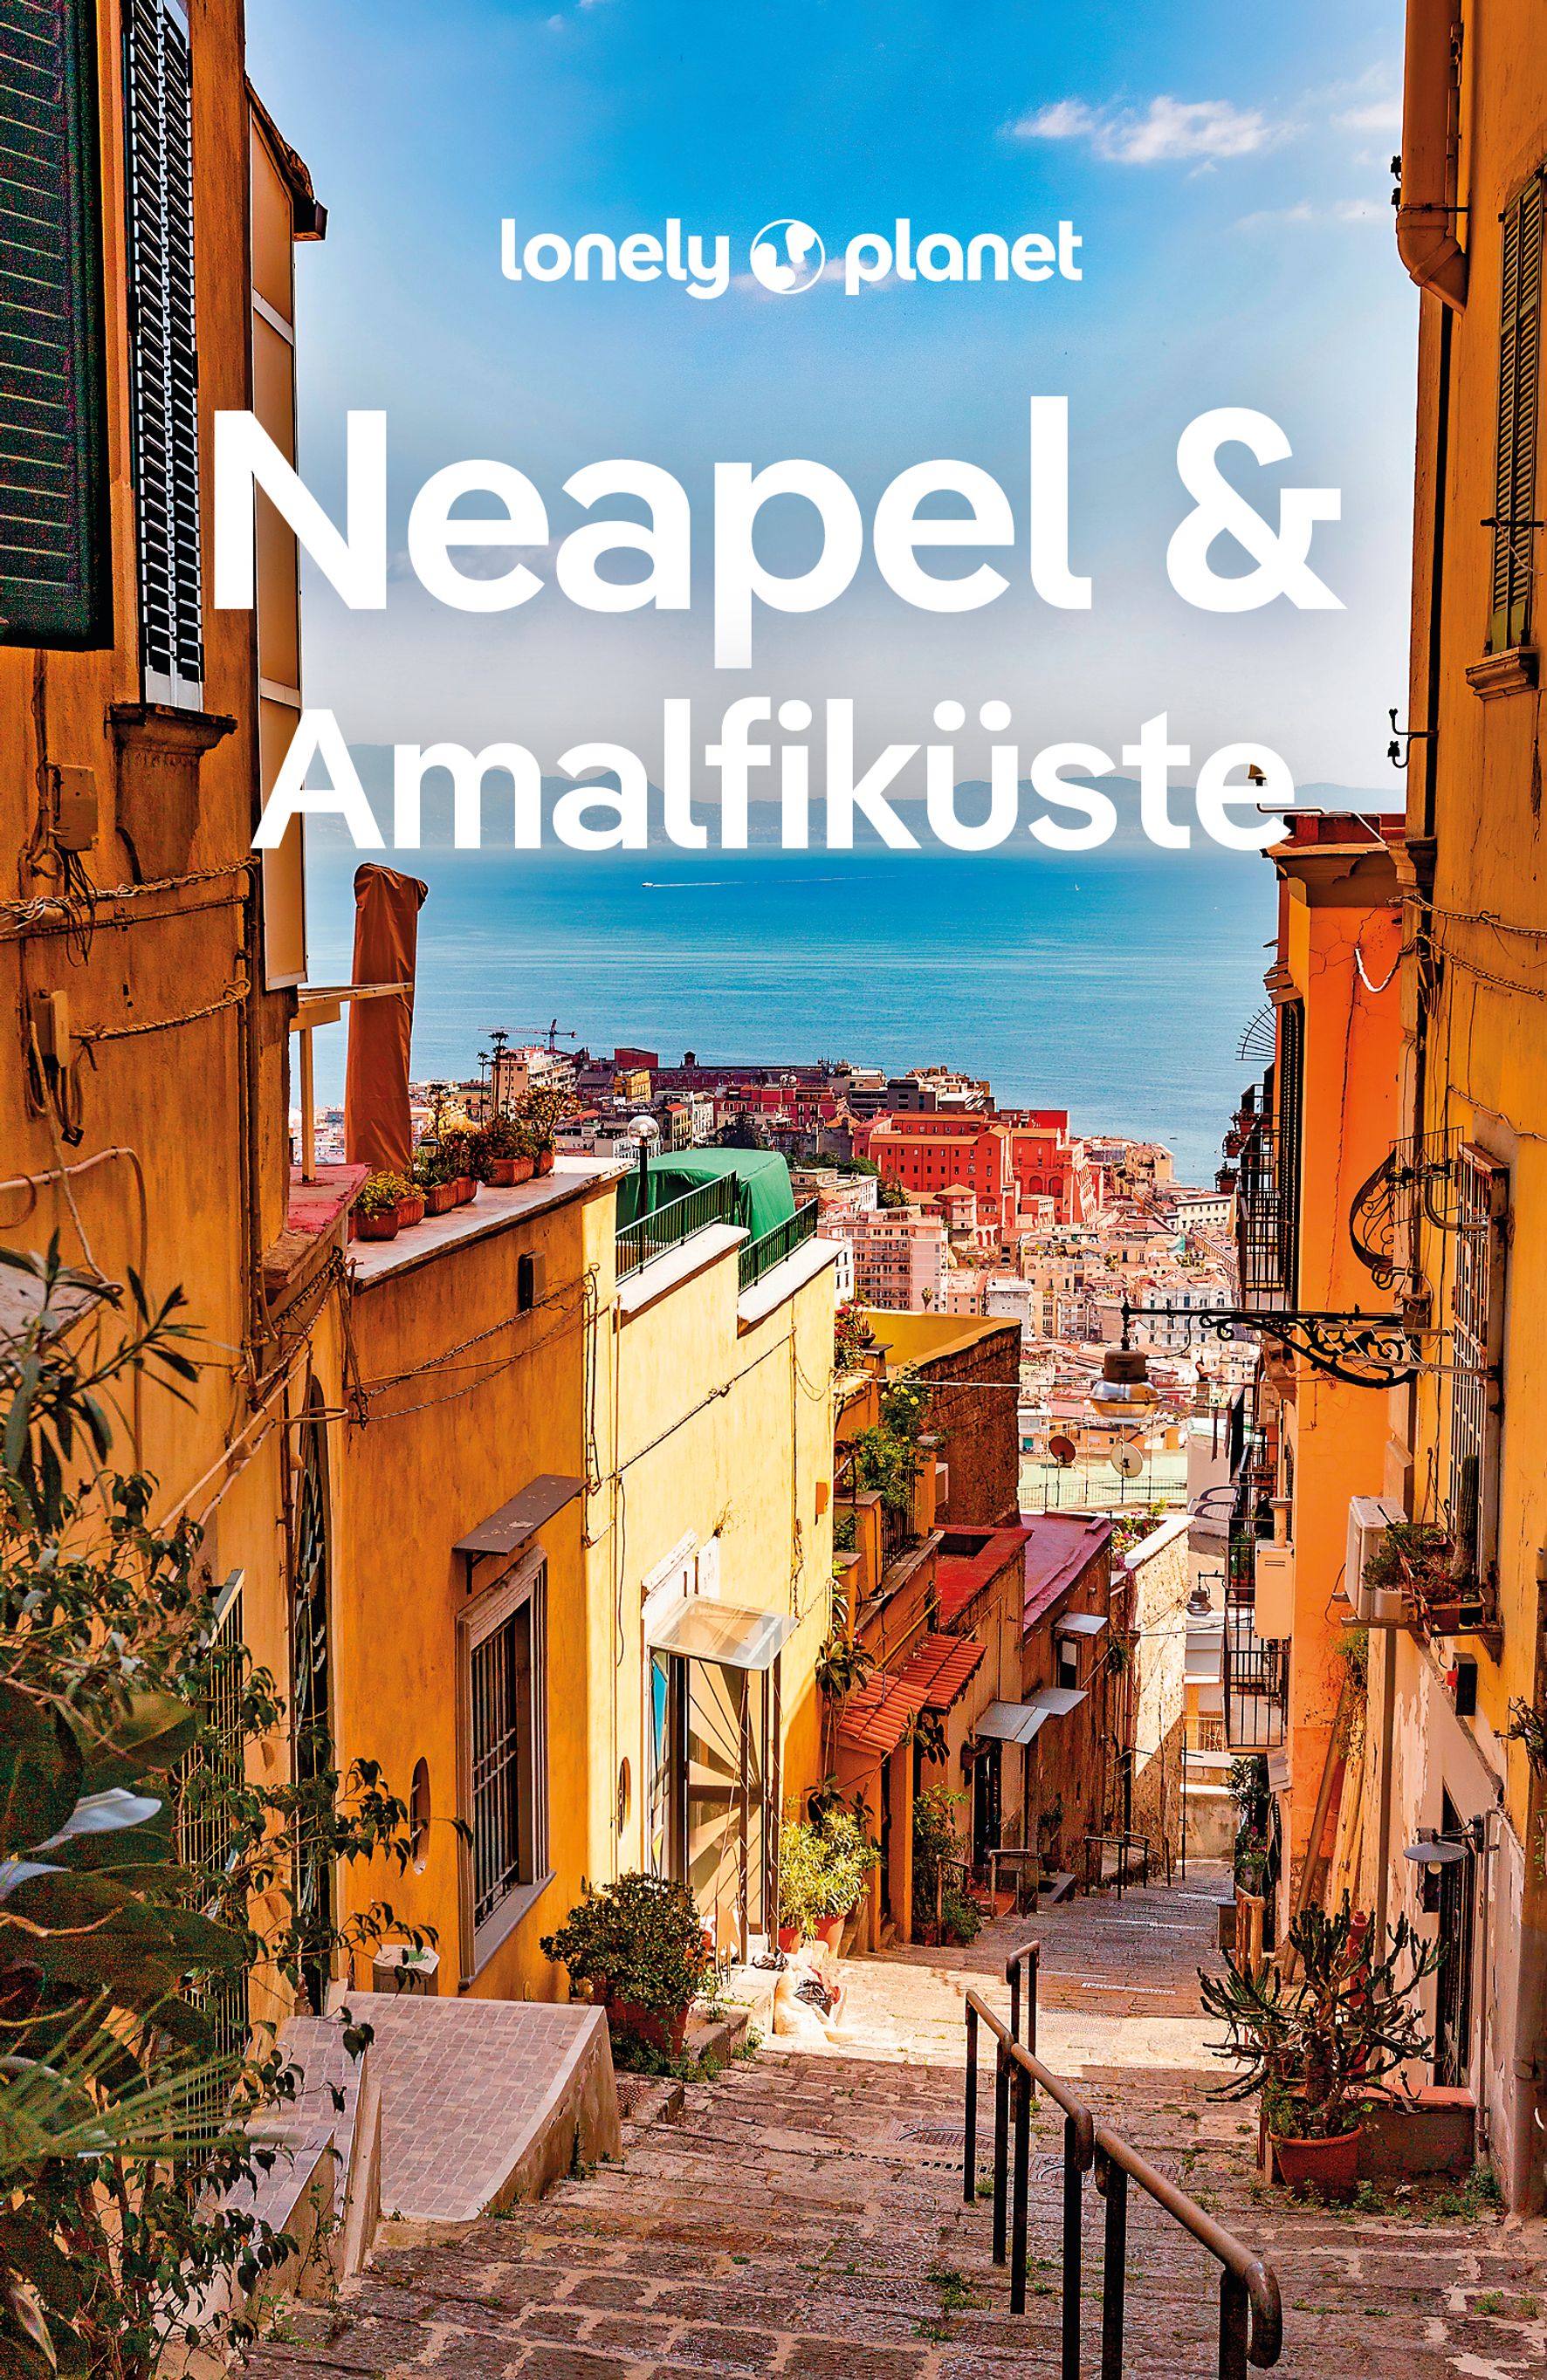 Lonely Planet Neapel & Amalfiküste